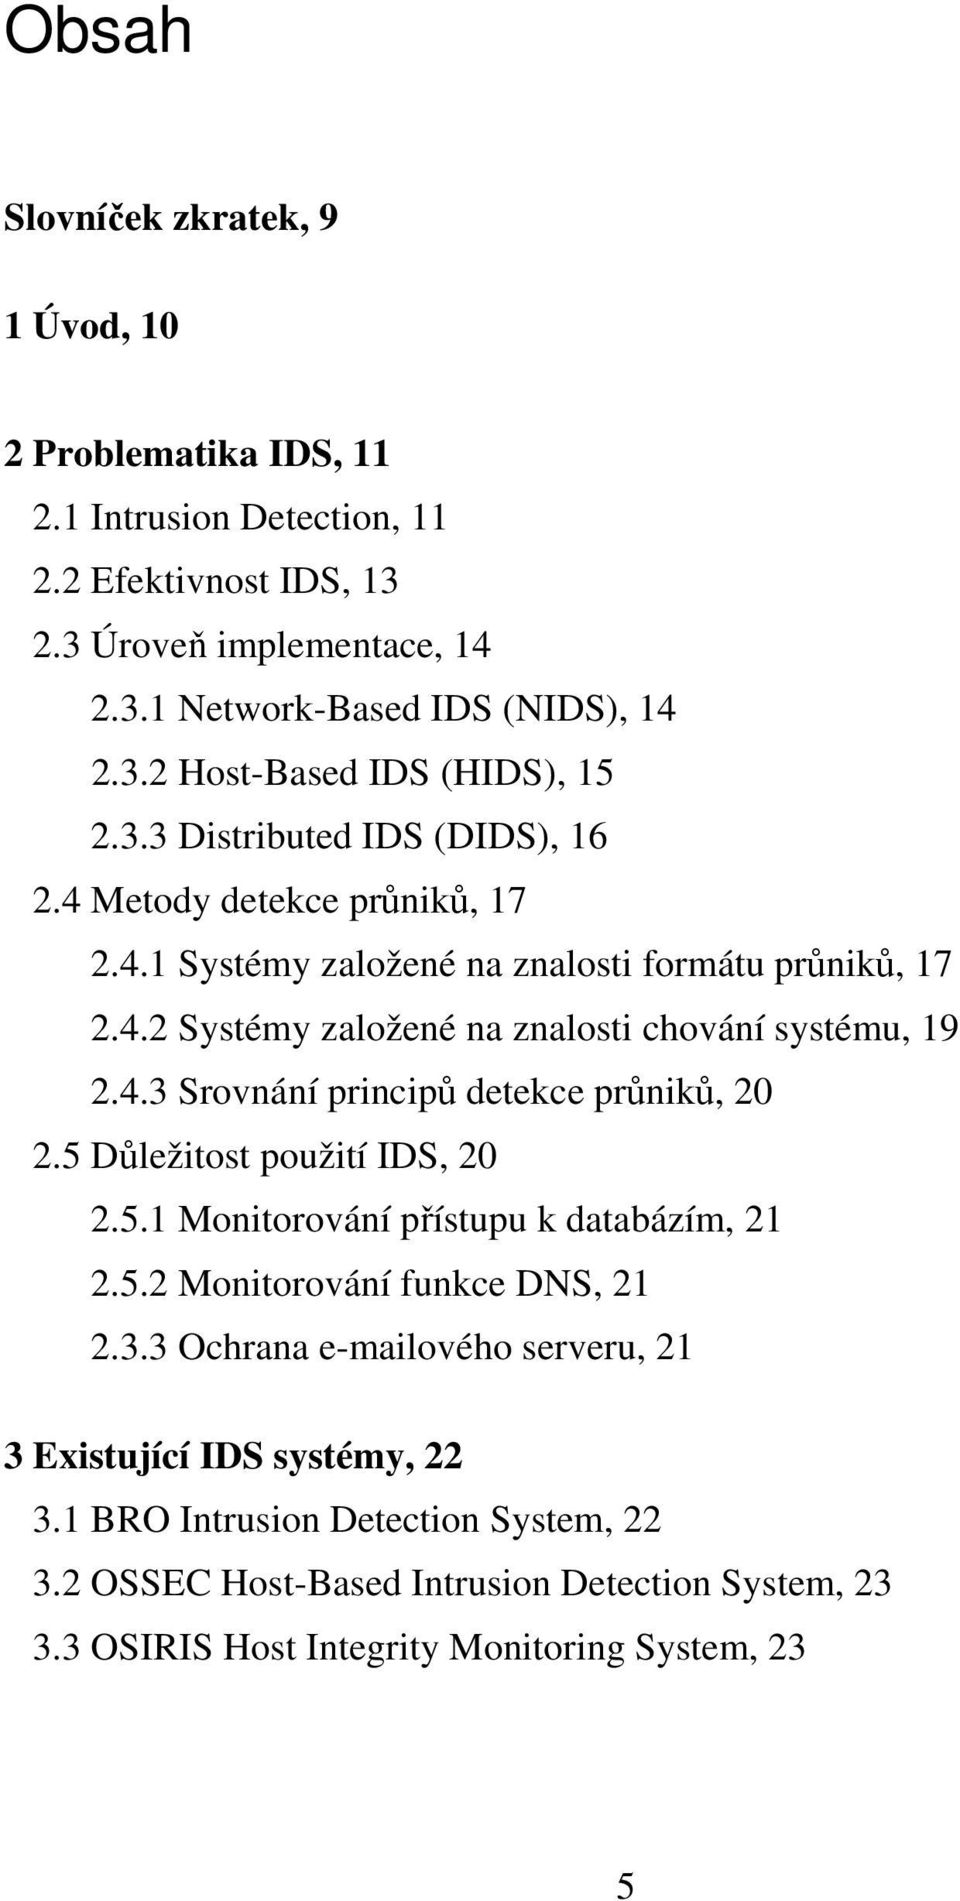 5 Dležitost použití IDS, 20 2.5.1 Monitorování pístupu k databázím, 21 2.5.2 Monitorování funkce DNS, 21 2.3.3 Ochrana e-mailového serveru, 21 3 Existující IDS systémy, 22 3.